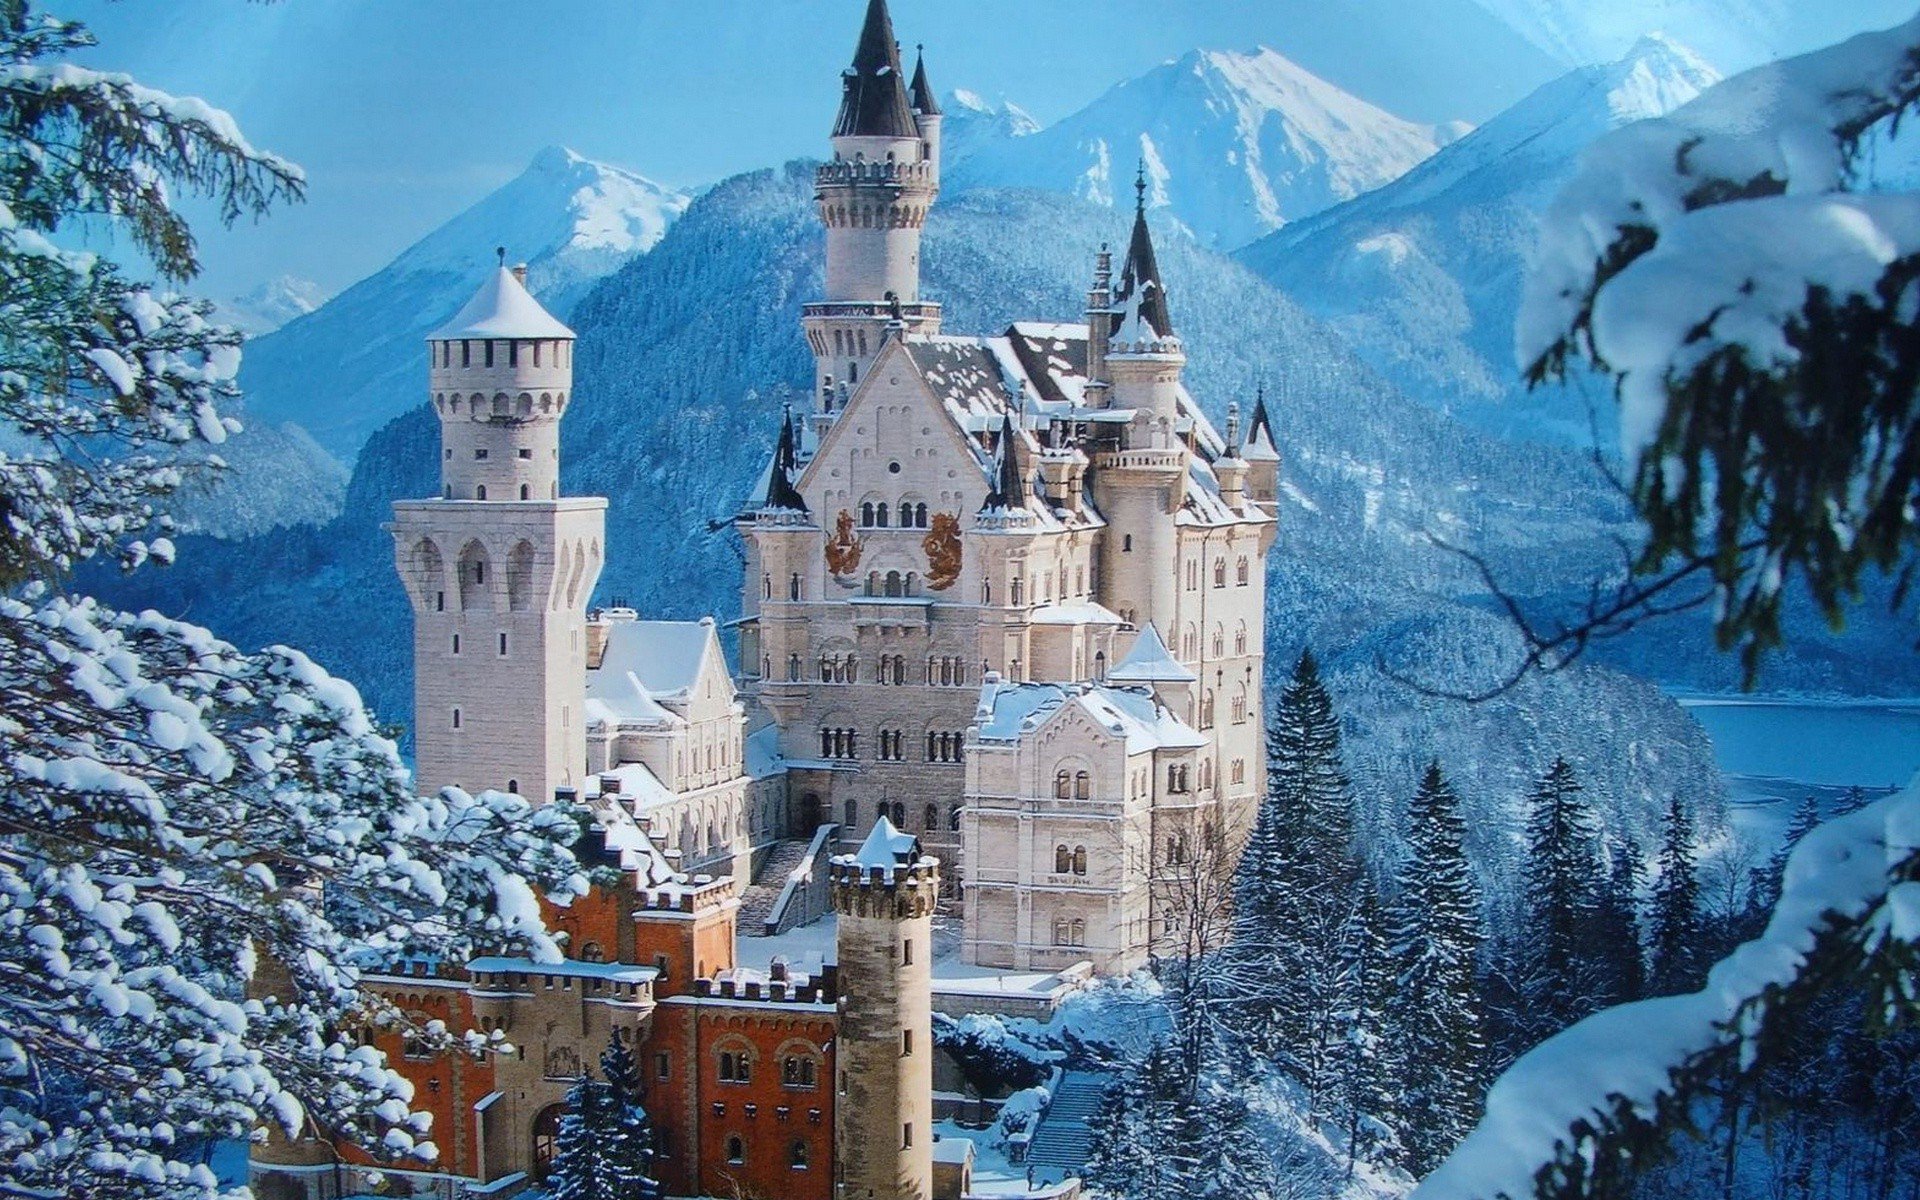 Neuschwanstein, il castello delle fiabe esiste davvero e si trova nel sud della Baviera